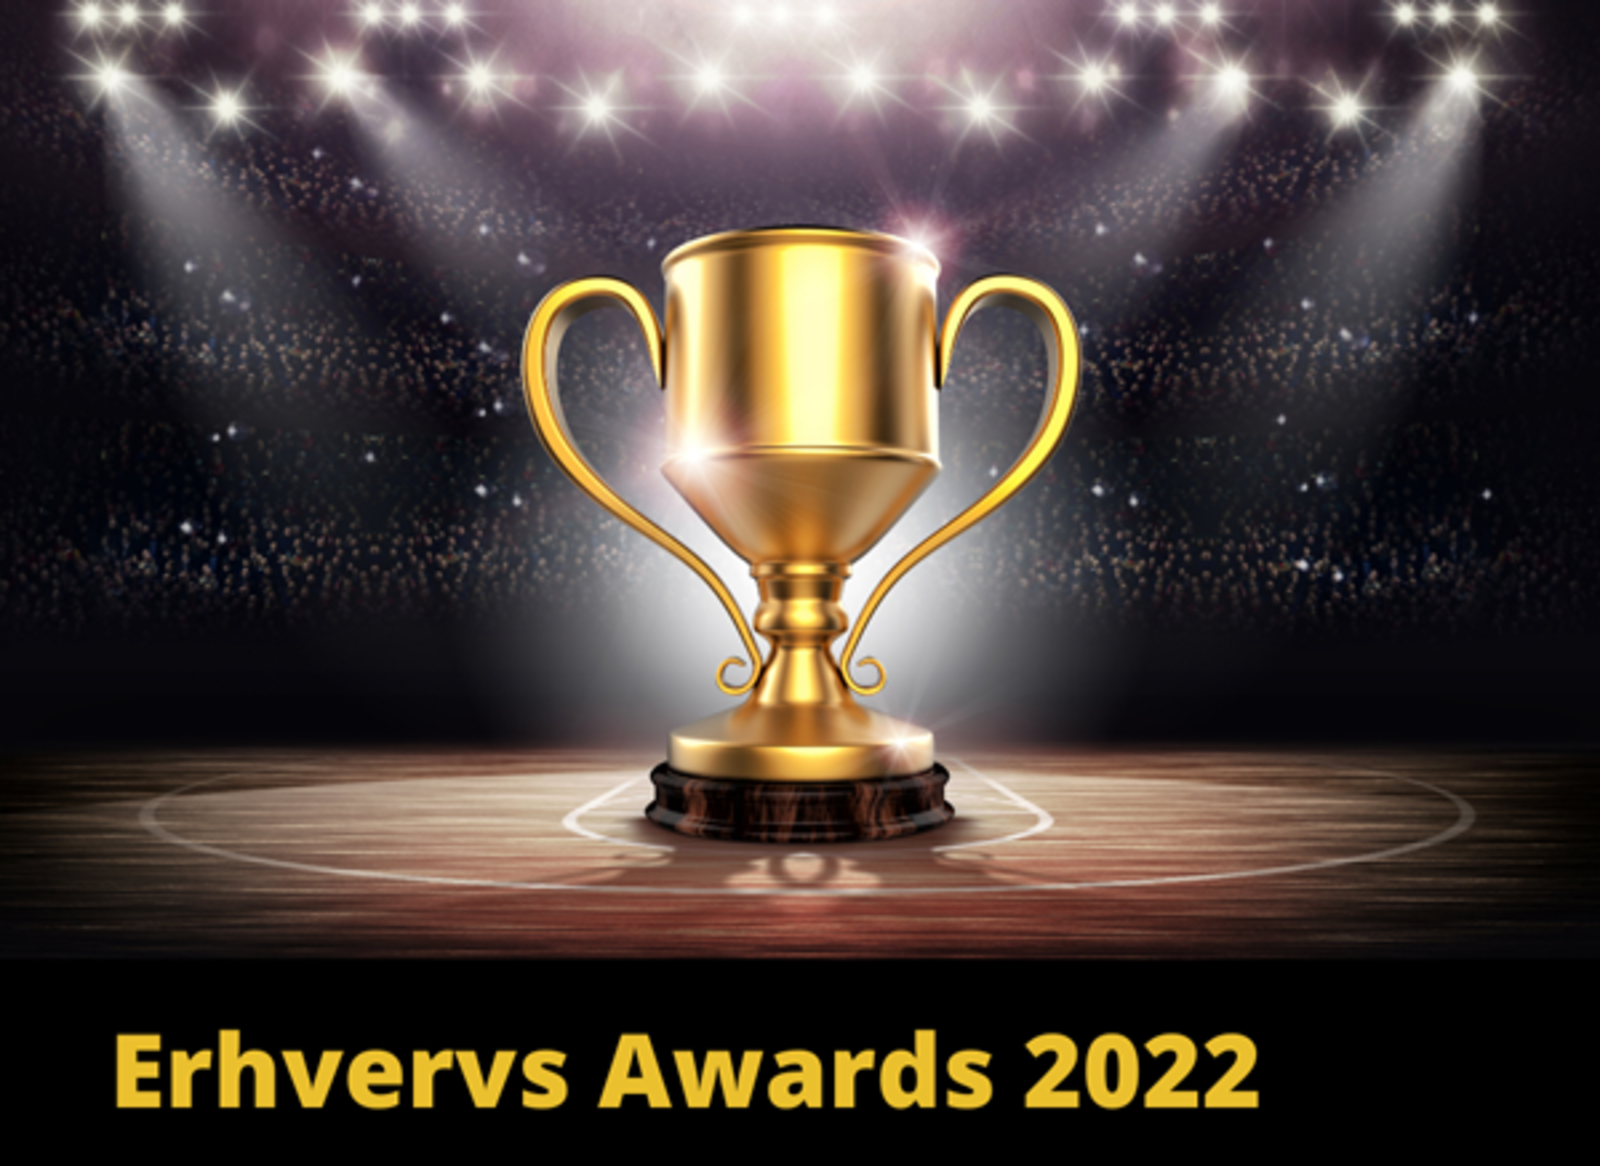 Erhvervs Awards 2022 